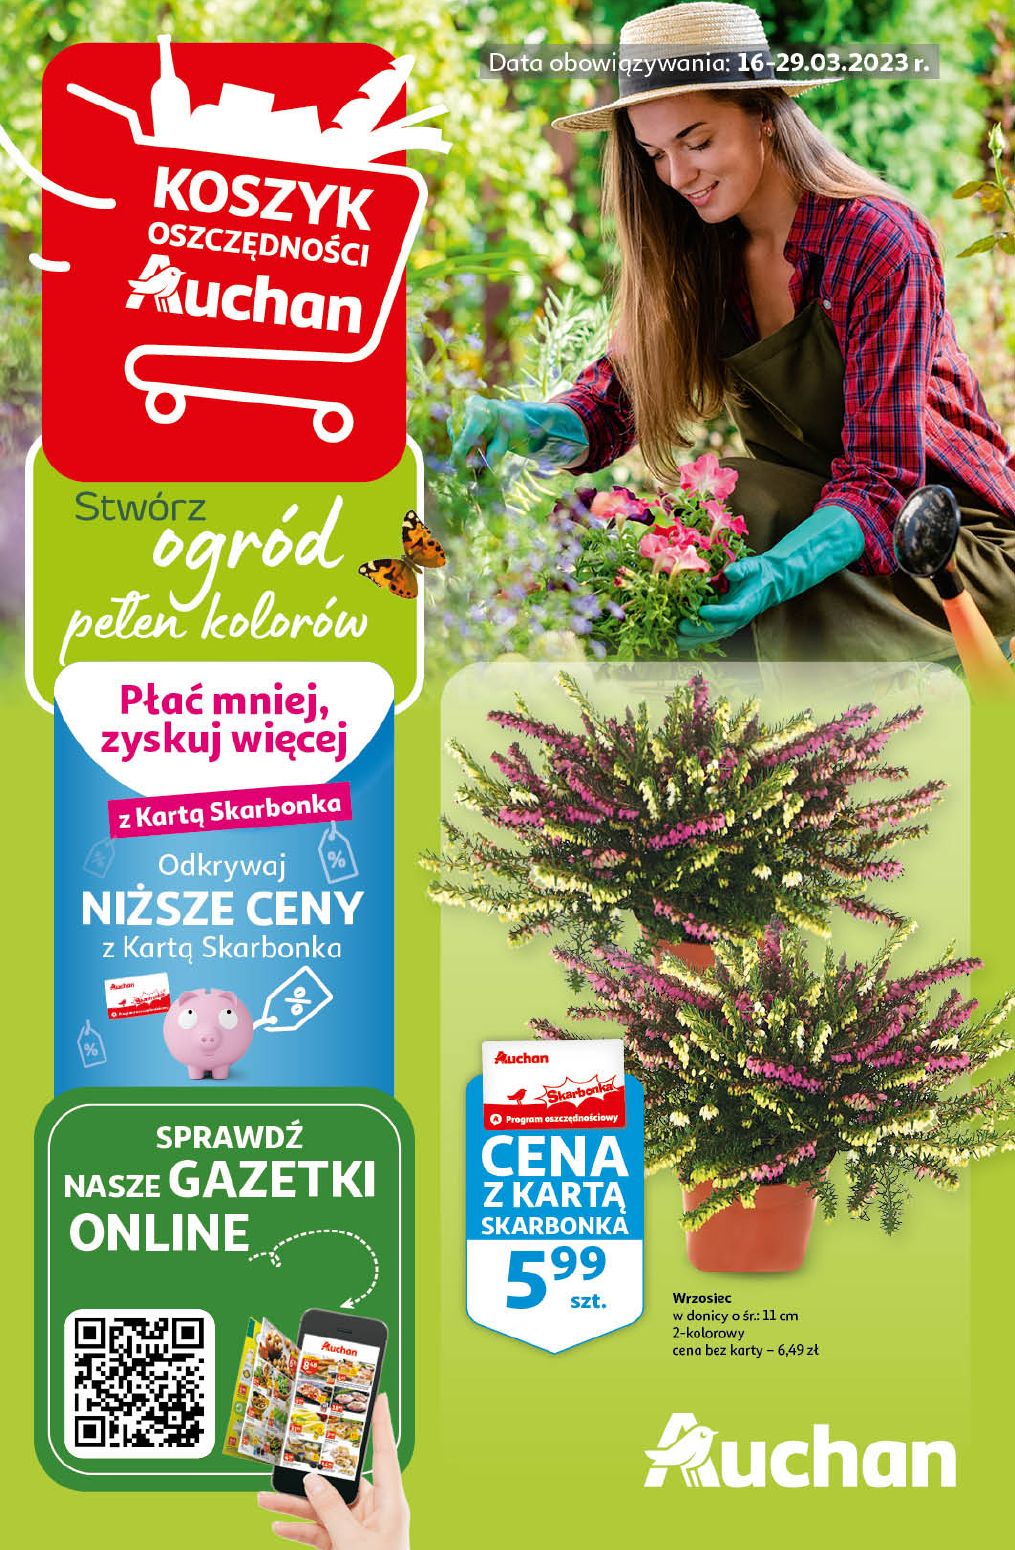 gazetka promocyjna Auchan – Ogród pełen kolorów - Strona {{page}}